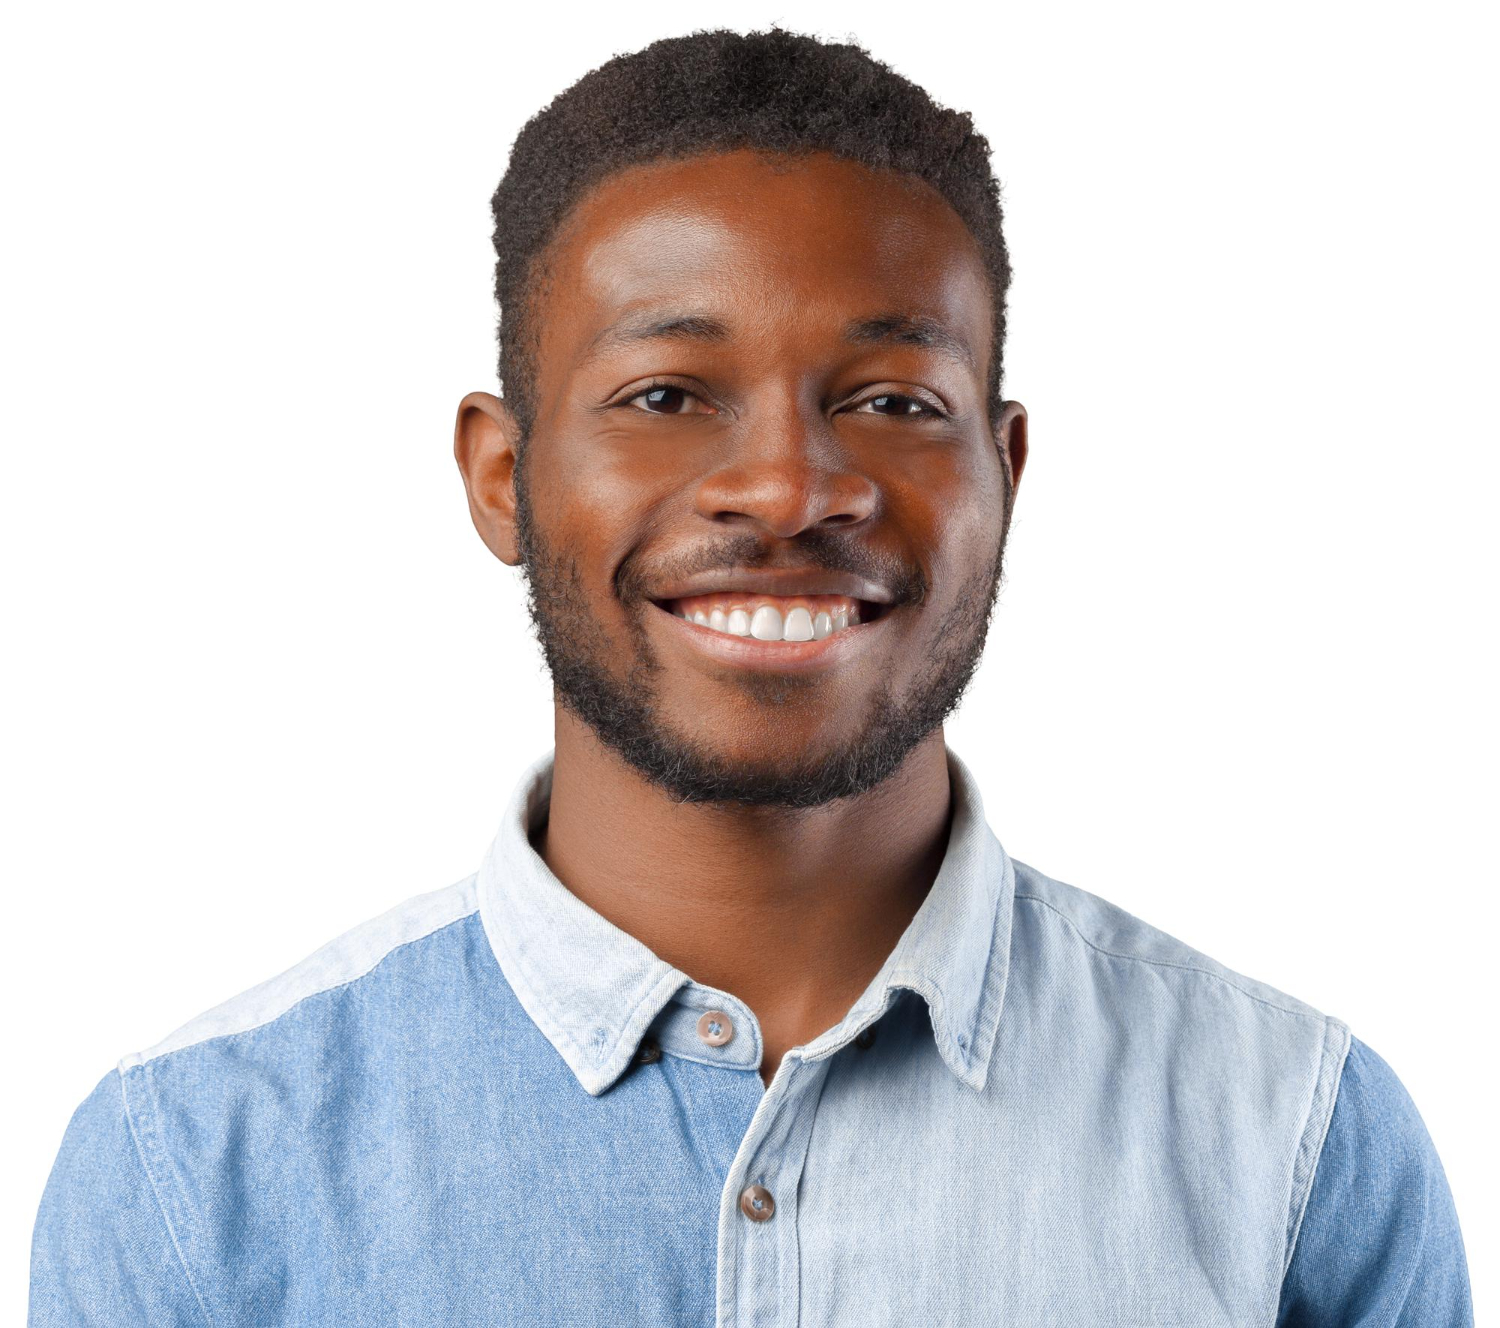 Profile picture of male black man